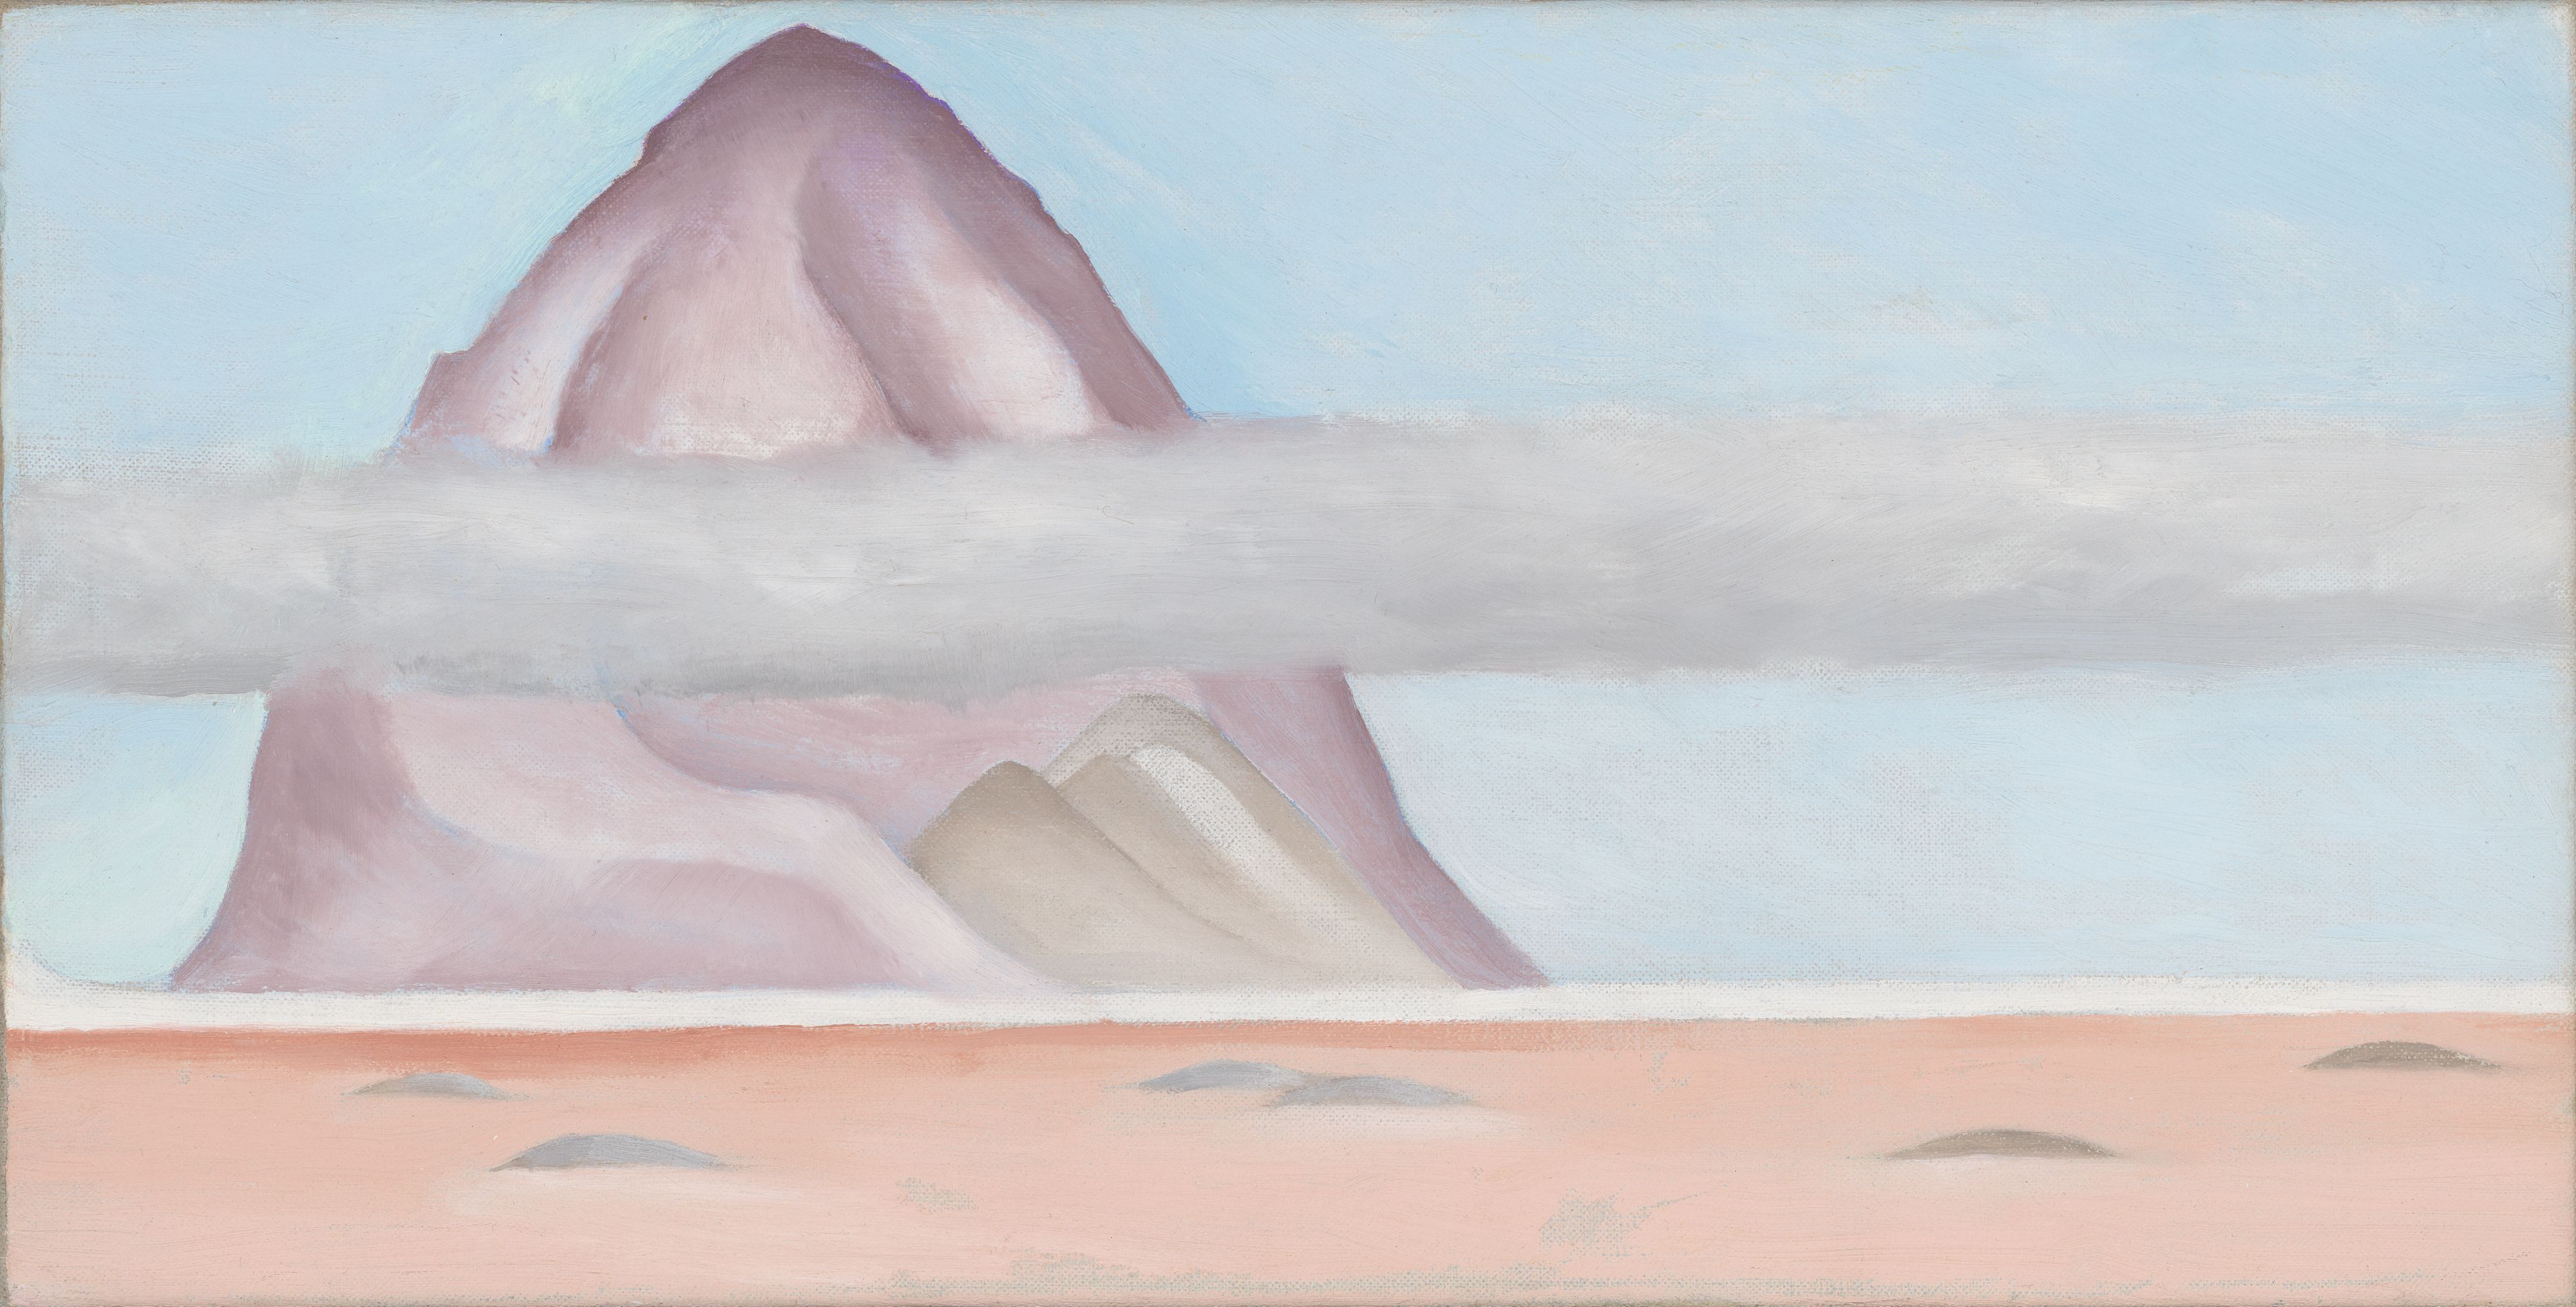 Georgia O'Keeffe. Misti Again - A Memory. 1957. Source: Georgia O'Keeffe Museum